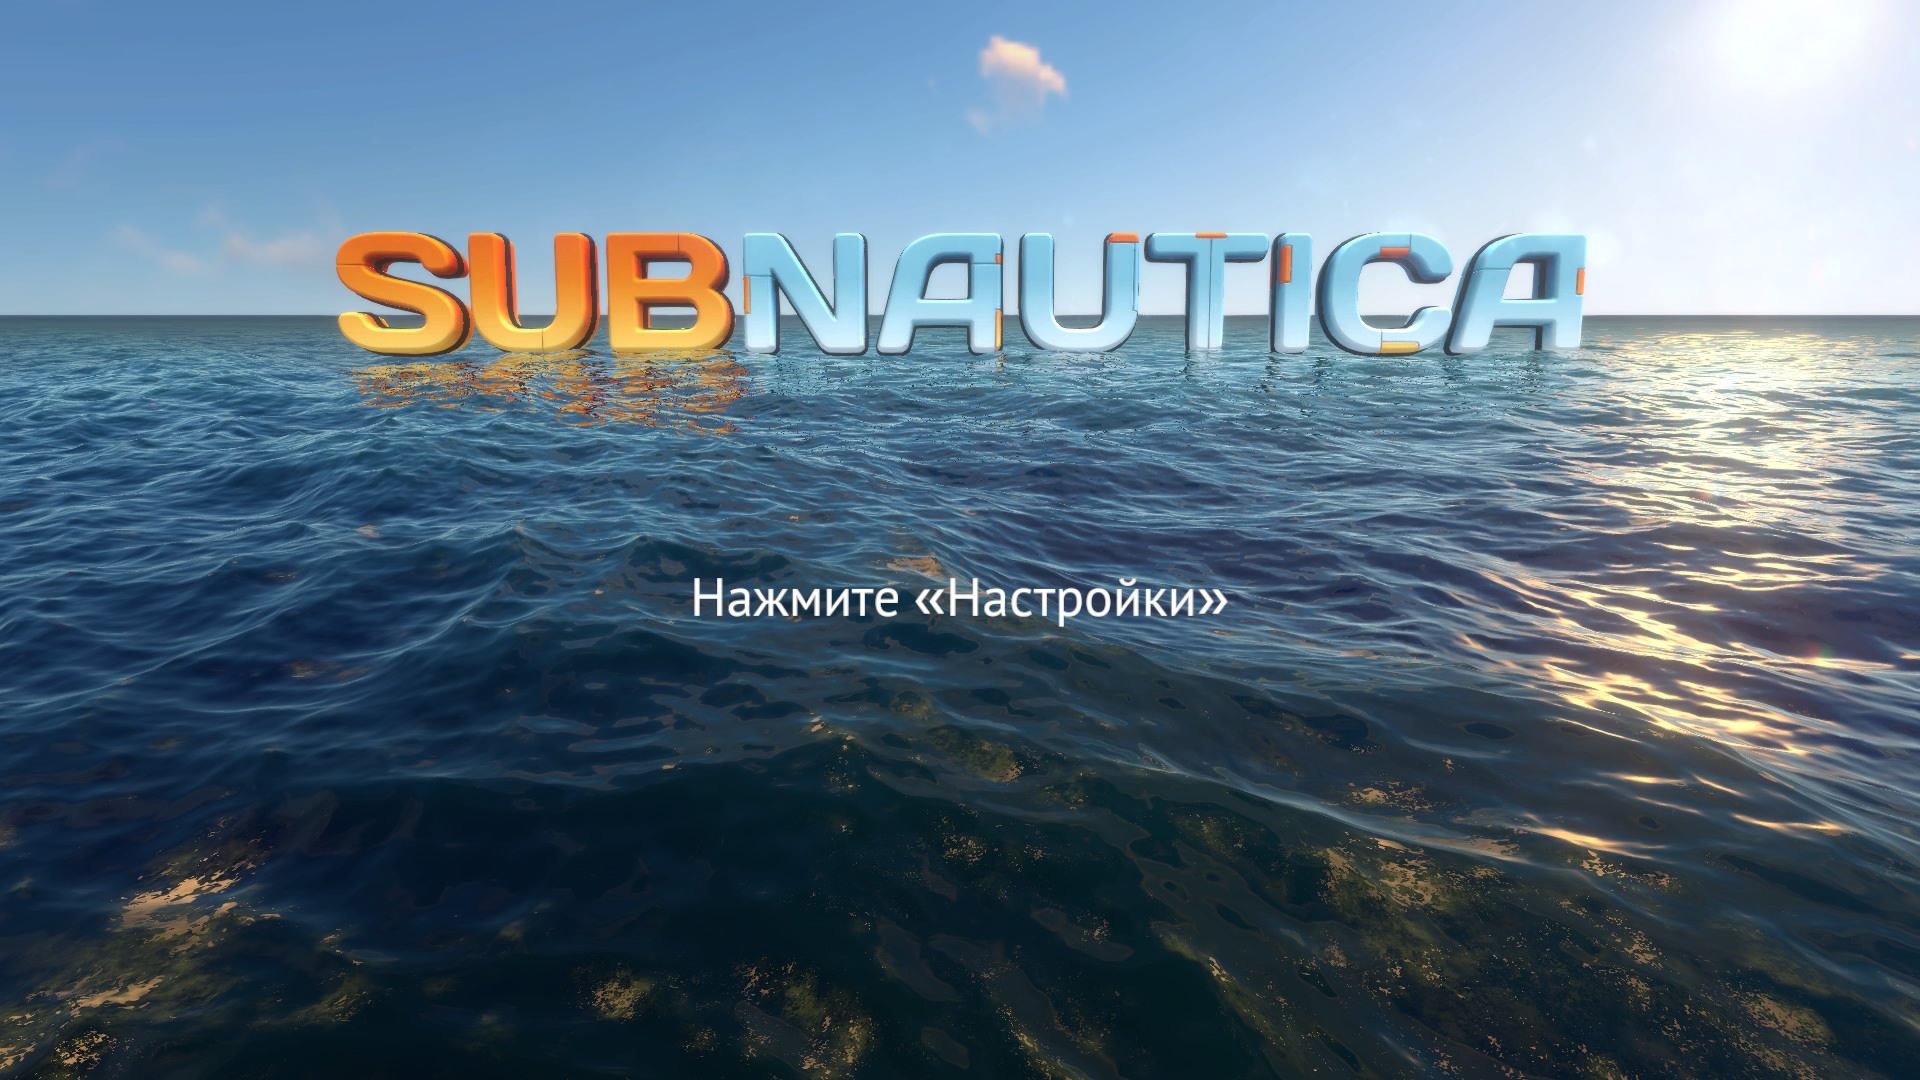 Subnautica_20190502182502.jpg